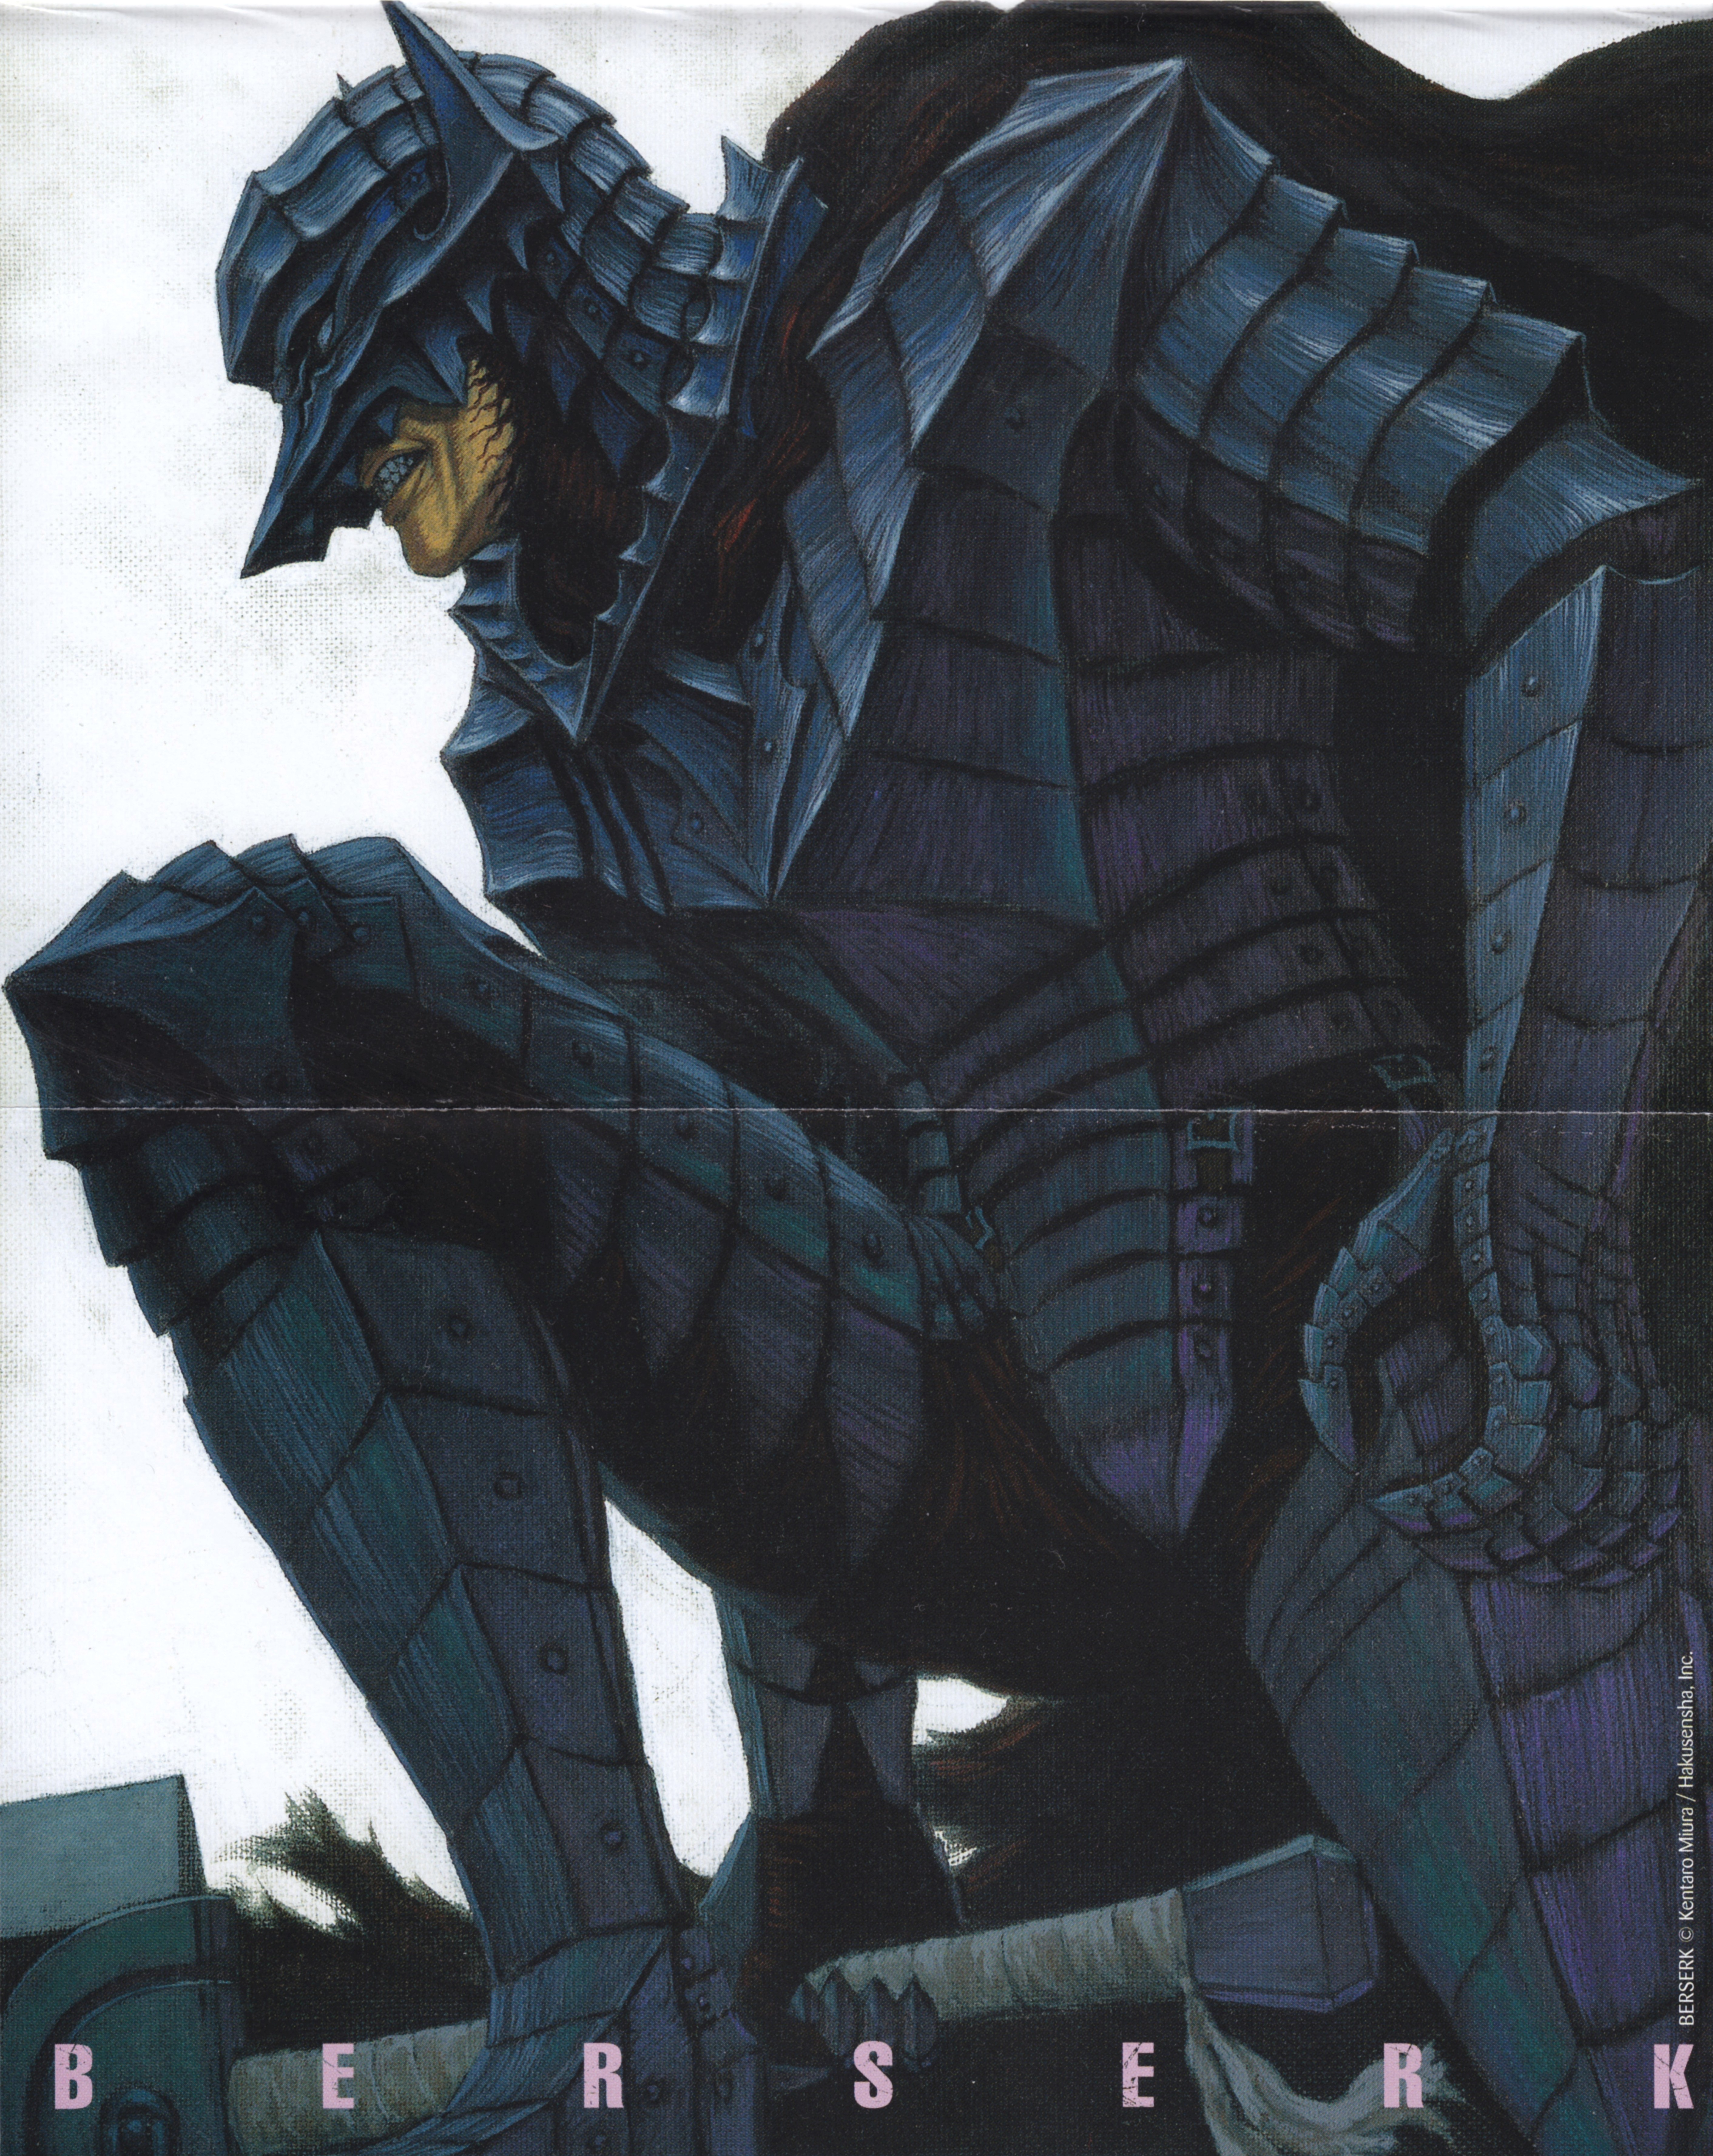 Berserk Black Swordsman Kentaro Miura Illustration Fantasy Art Guts Armored 5647x7107